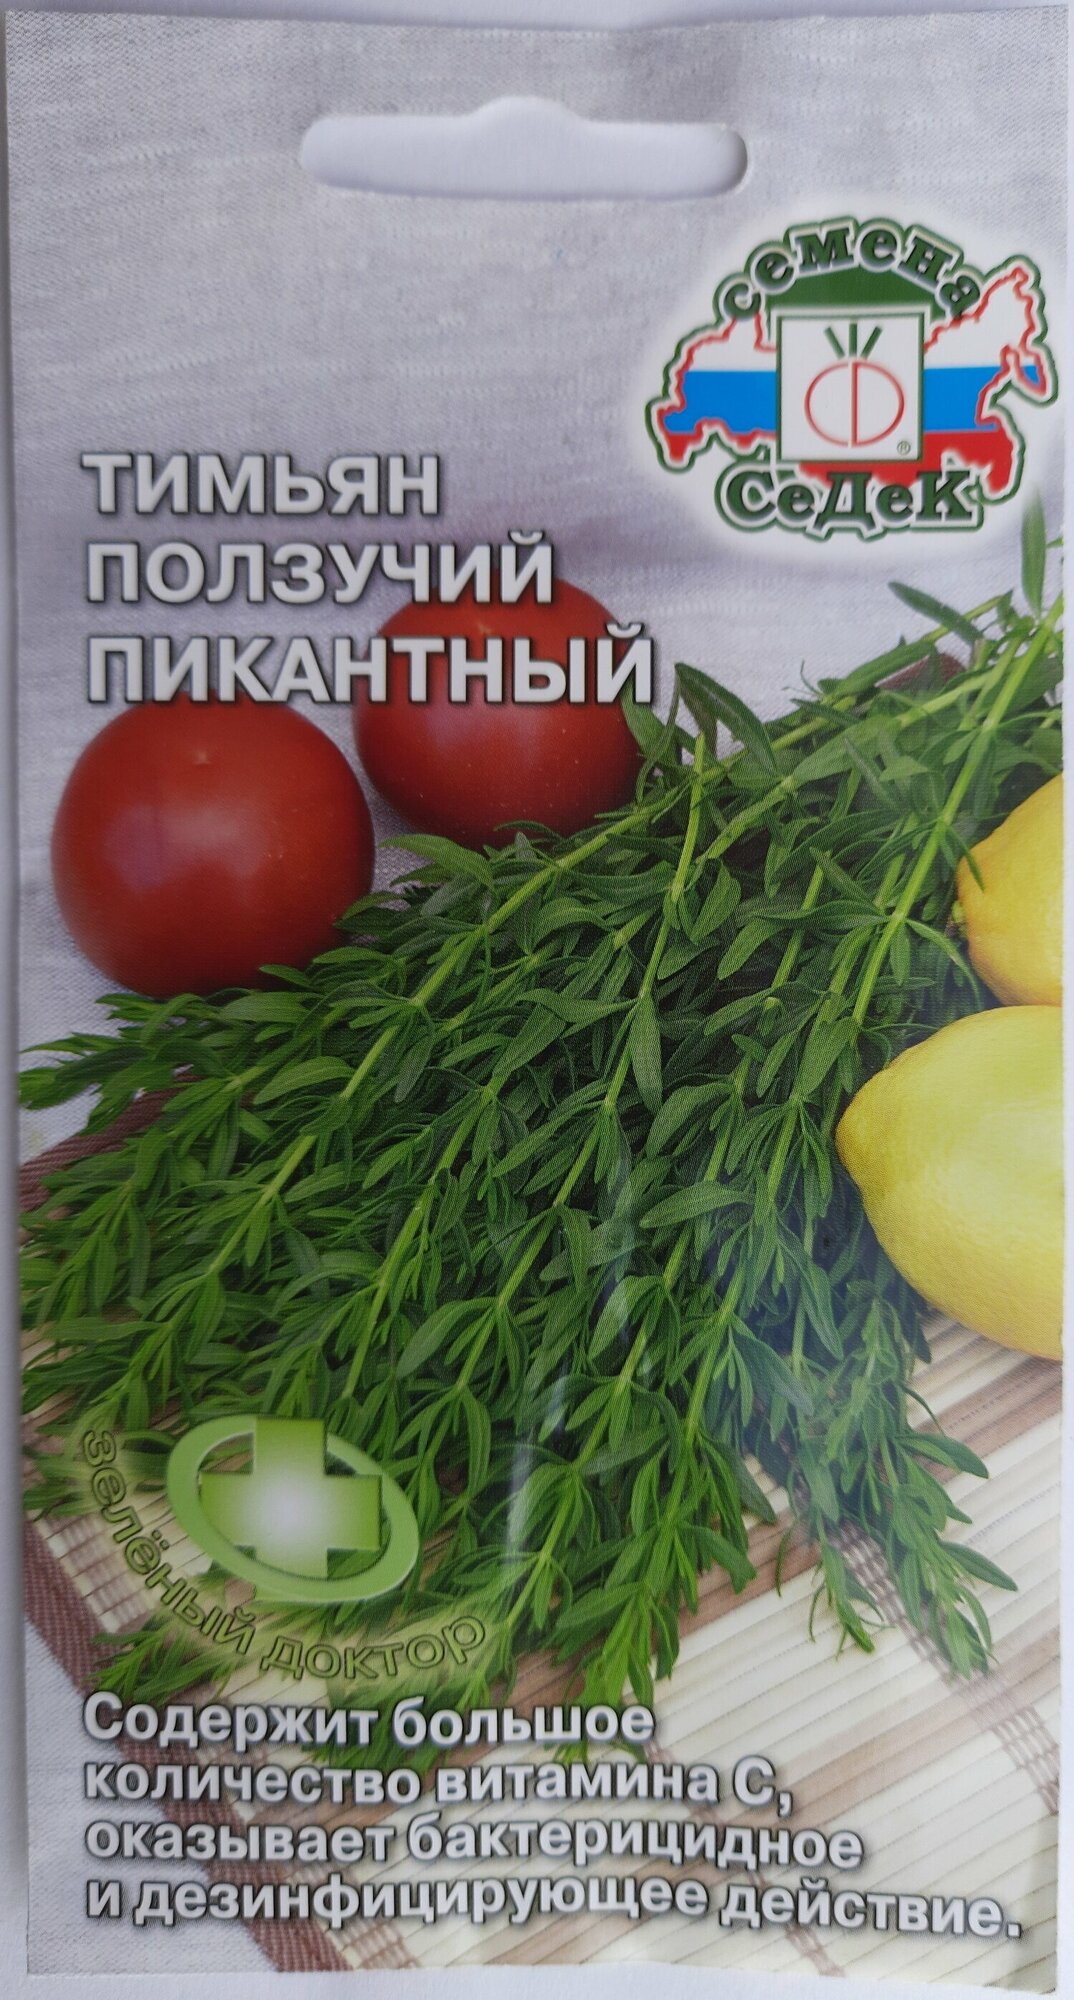 Семена Тимьян ползучий (чабрец) Пикантный 0.05 грамма семян Седек